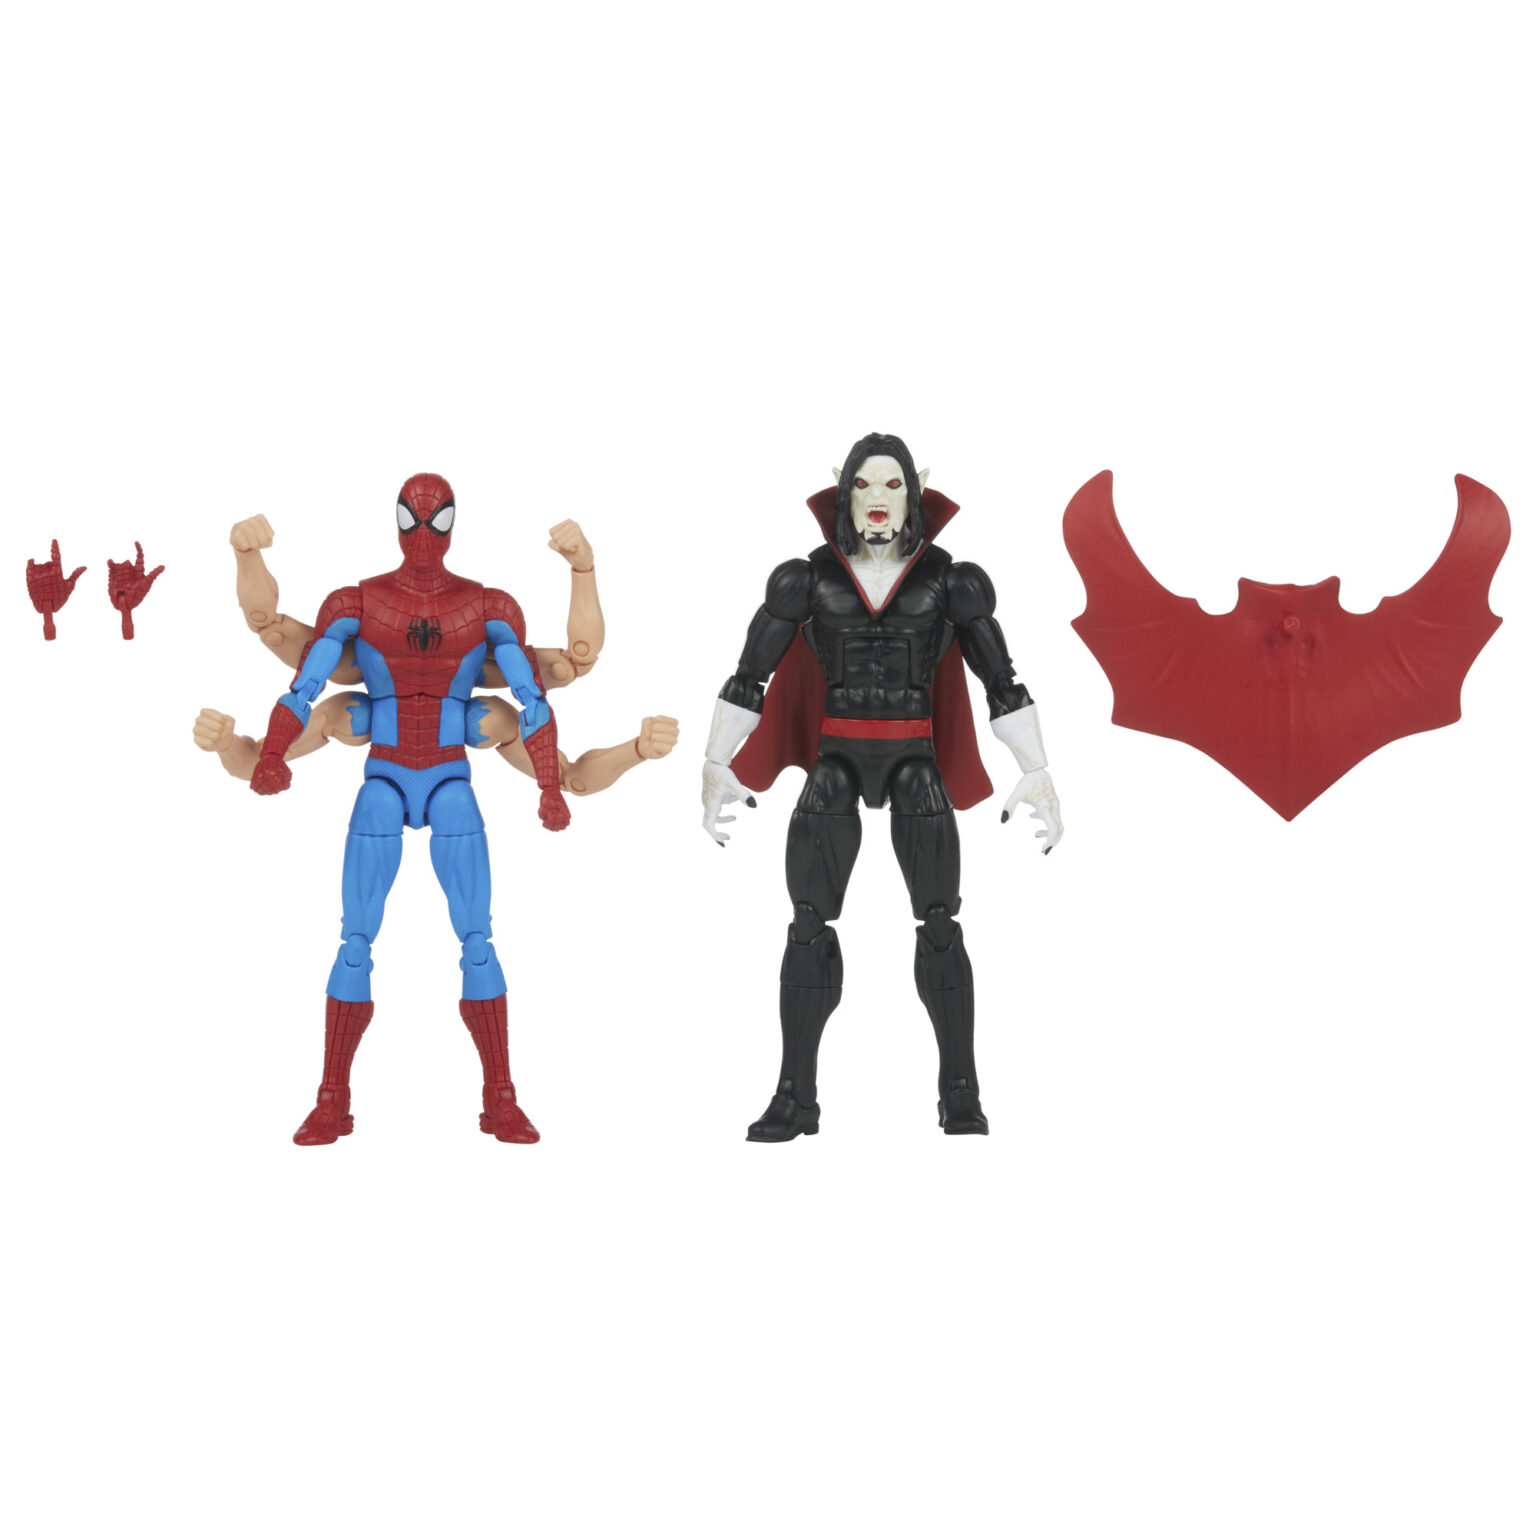 Equipment: Hasbro Marvel Legends Series Reveals Spider-Man/Morbius 2-Pack